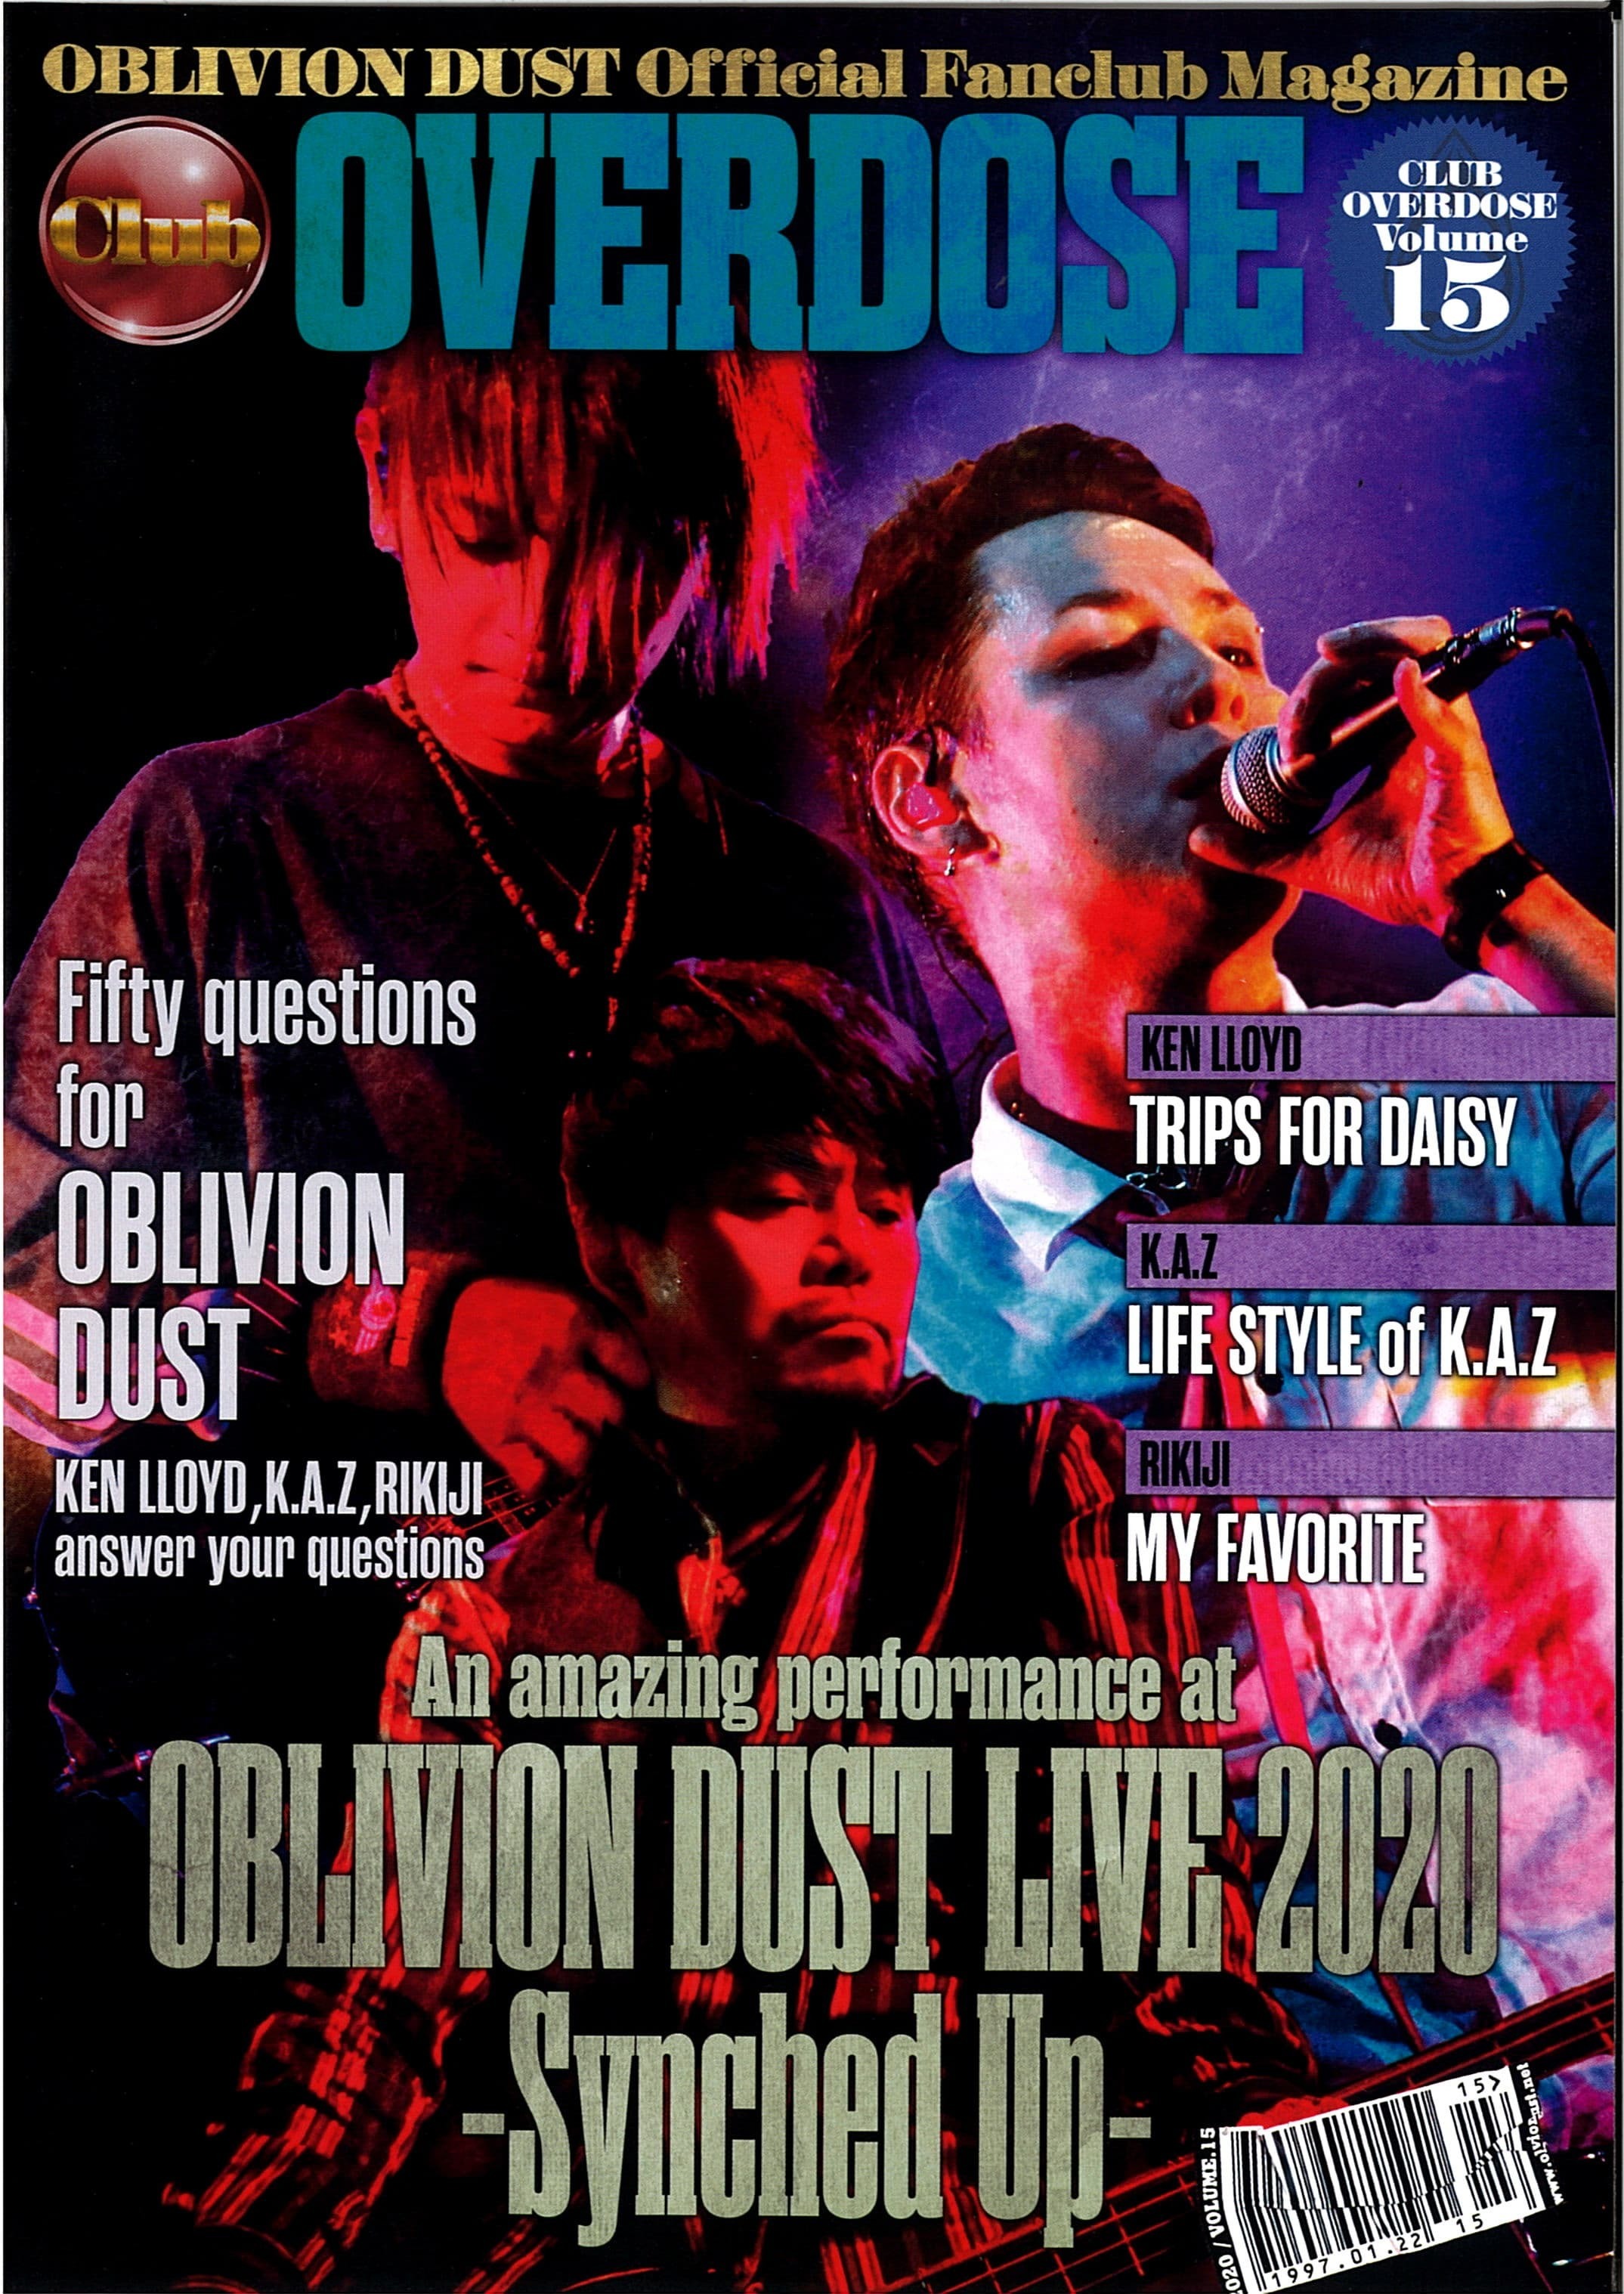 OBLIVION DUST Official Fanclub Magazine Club OVERDOSE Vol.15